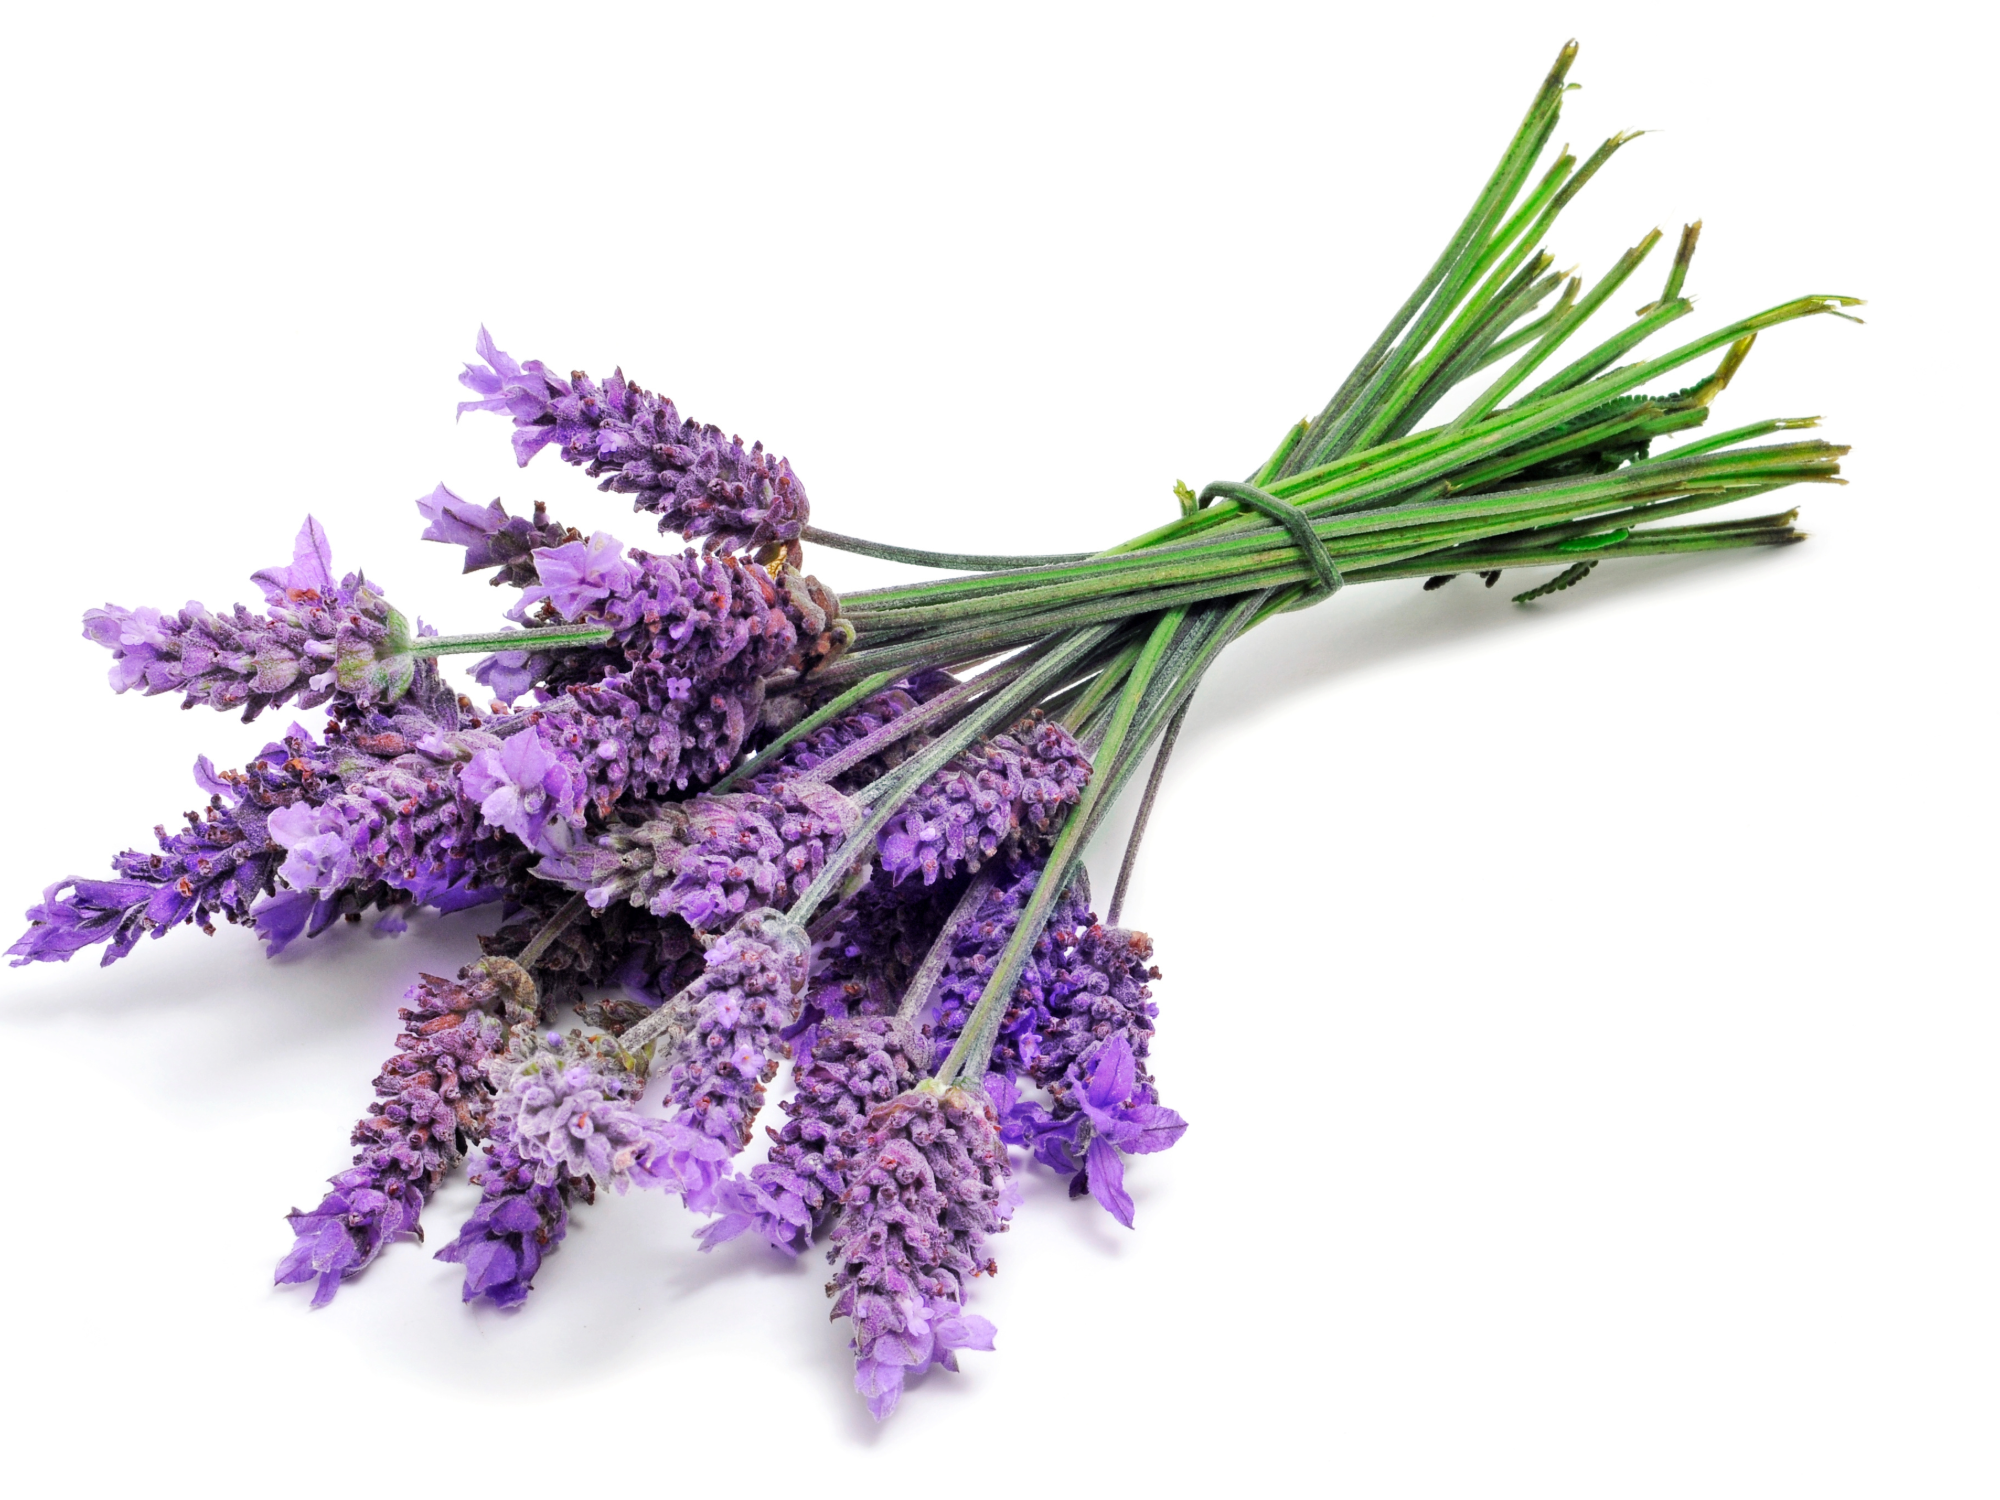 1. Lavender: The Calming Elixir